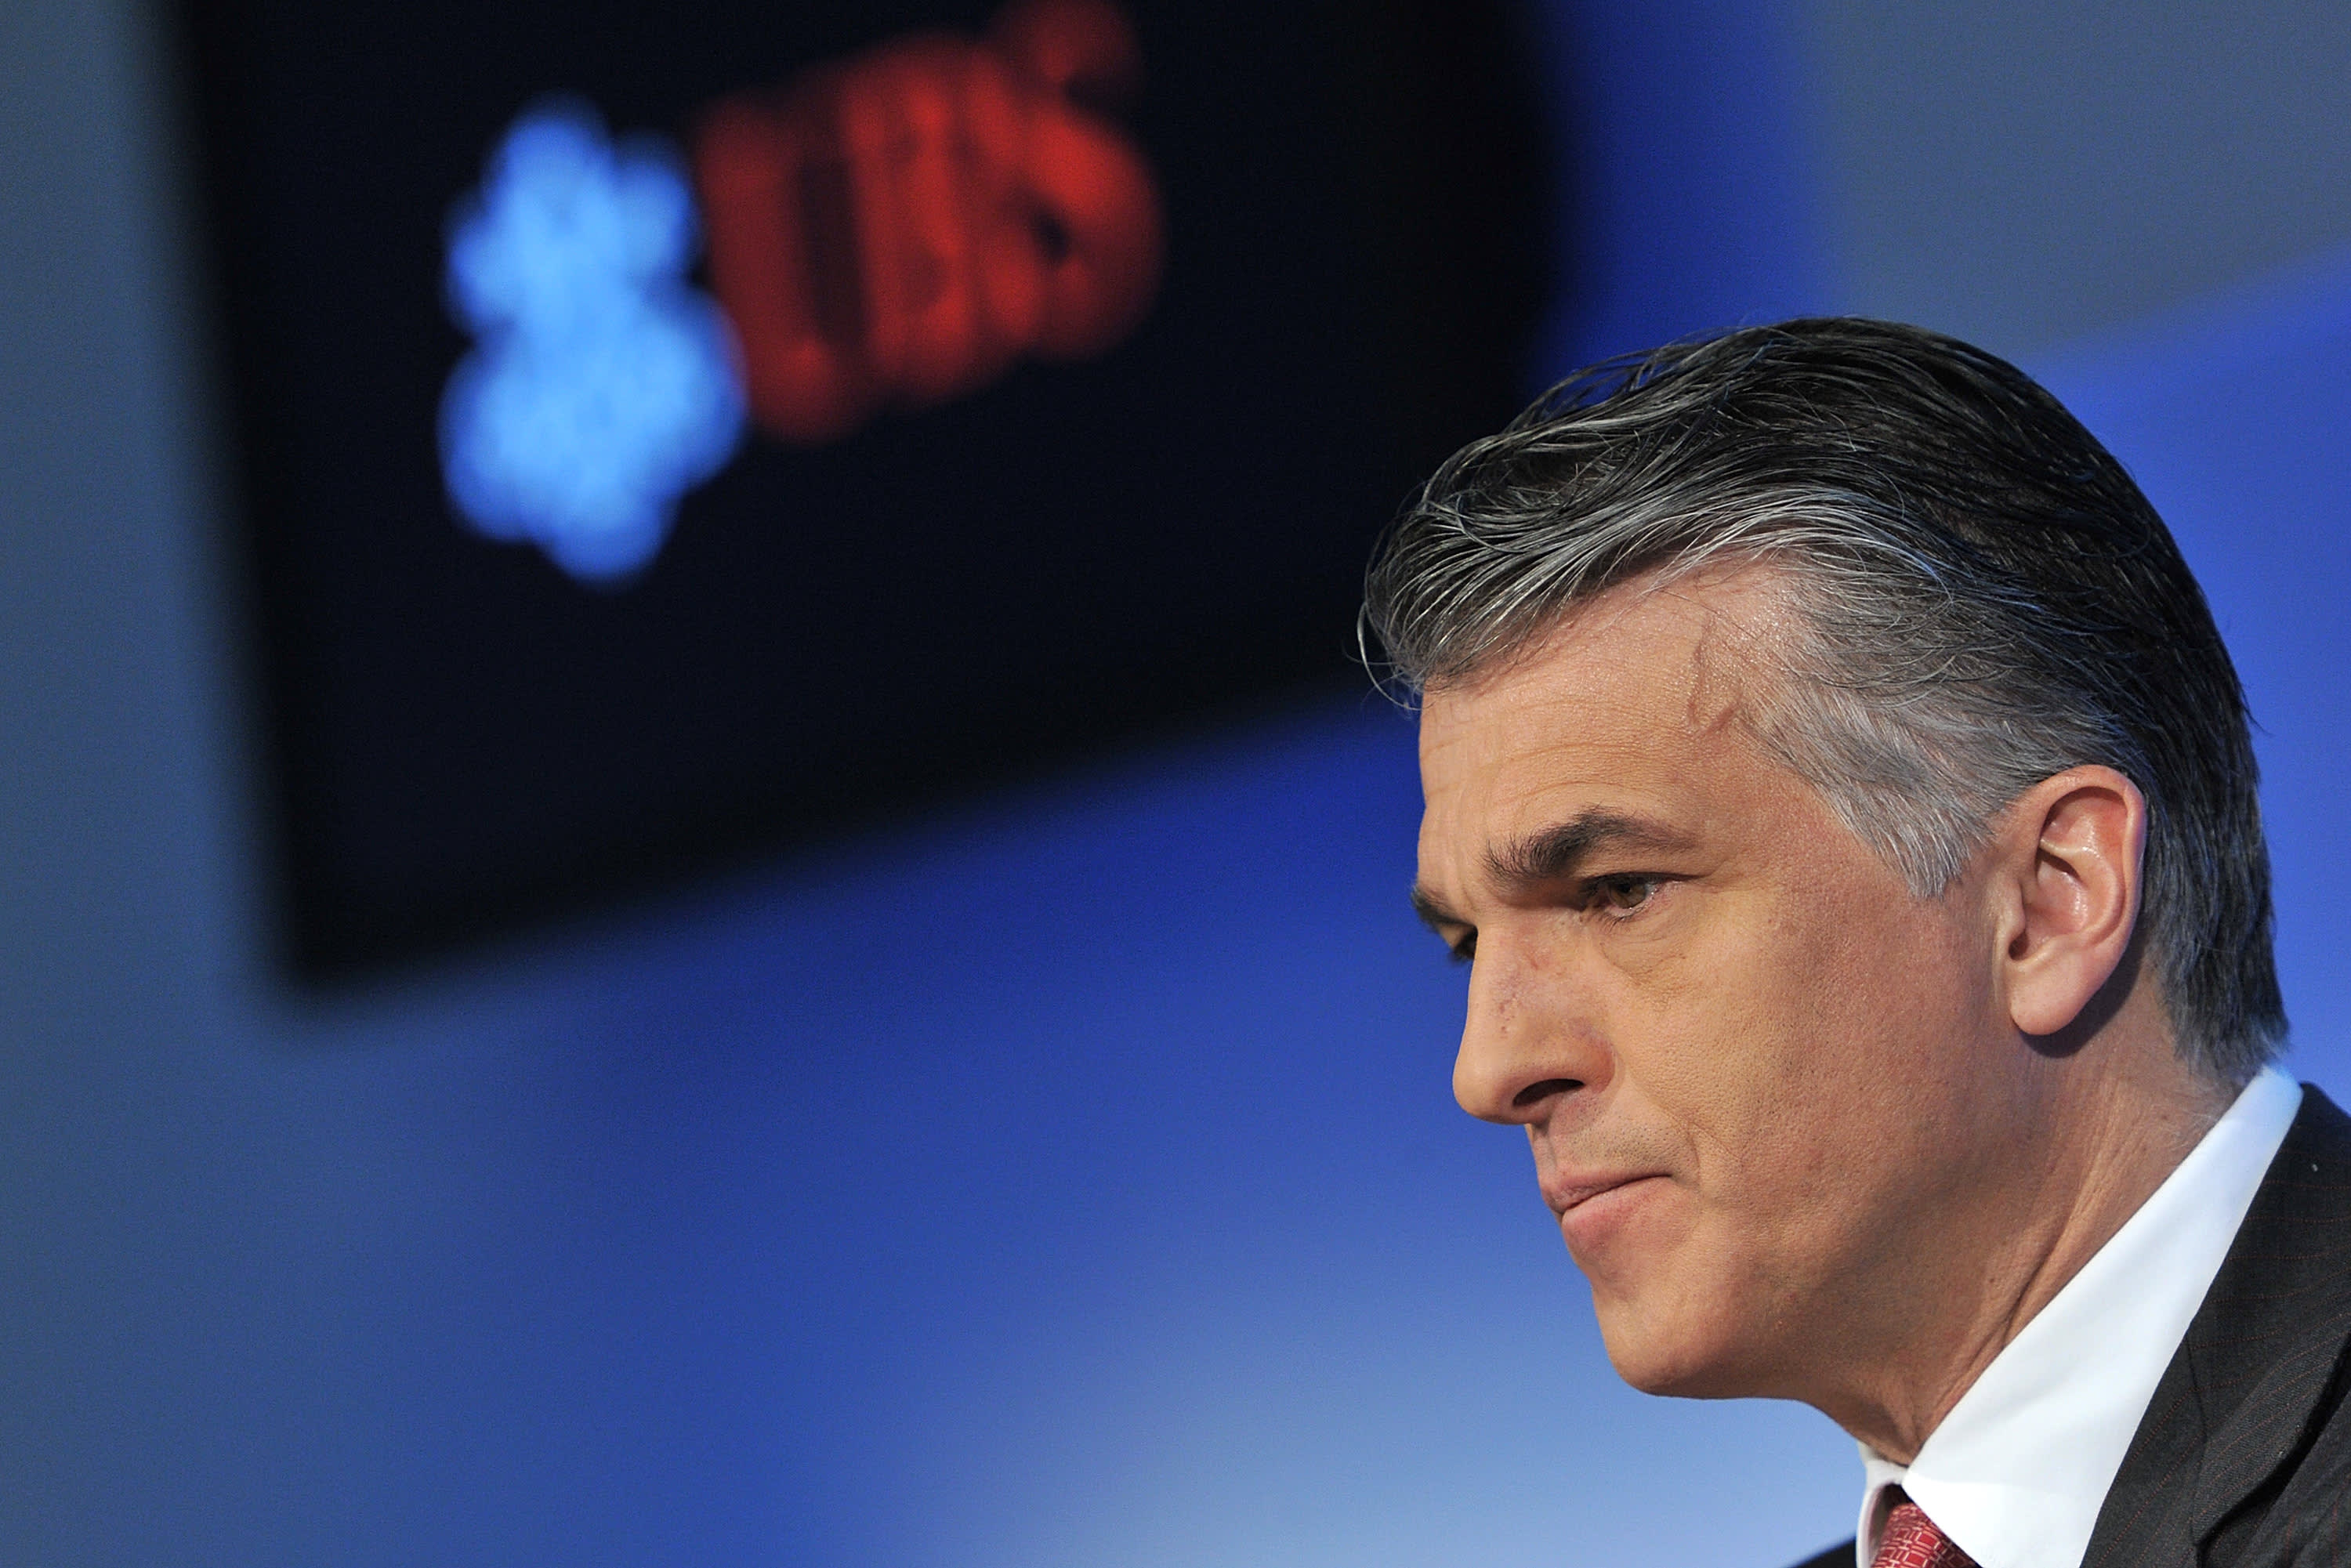 O UBS nomeou Sergio Ermotti como o novo CEO do grupo, após a aquisição do Credit Suisse